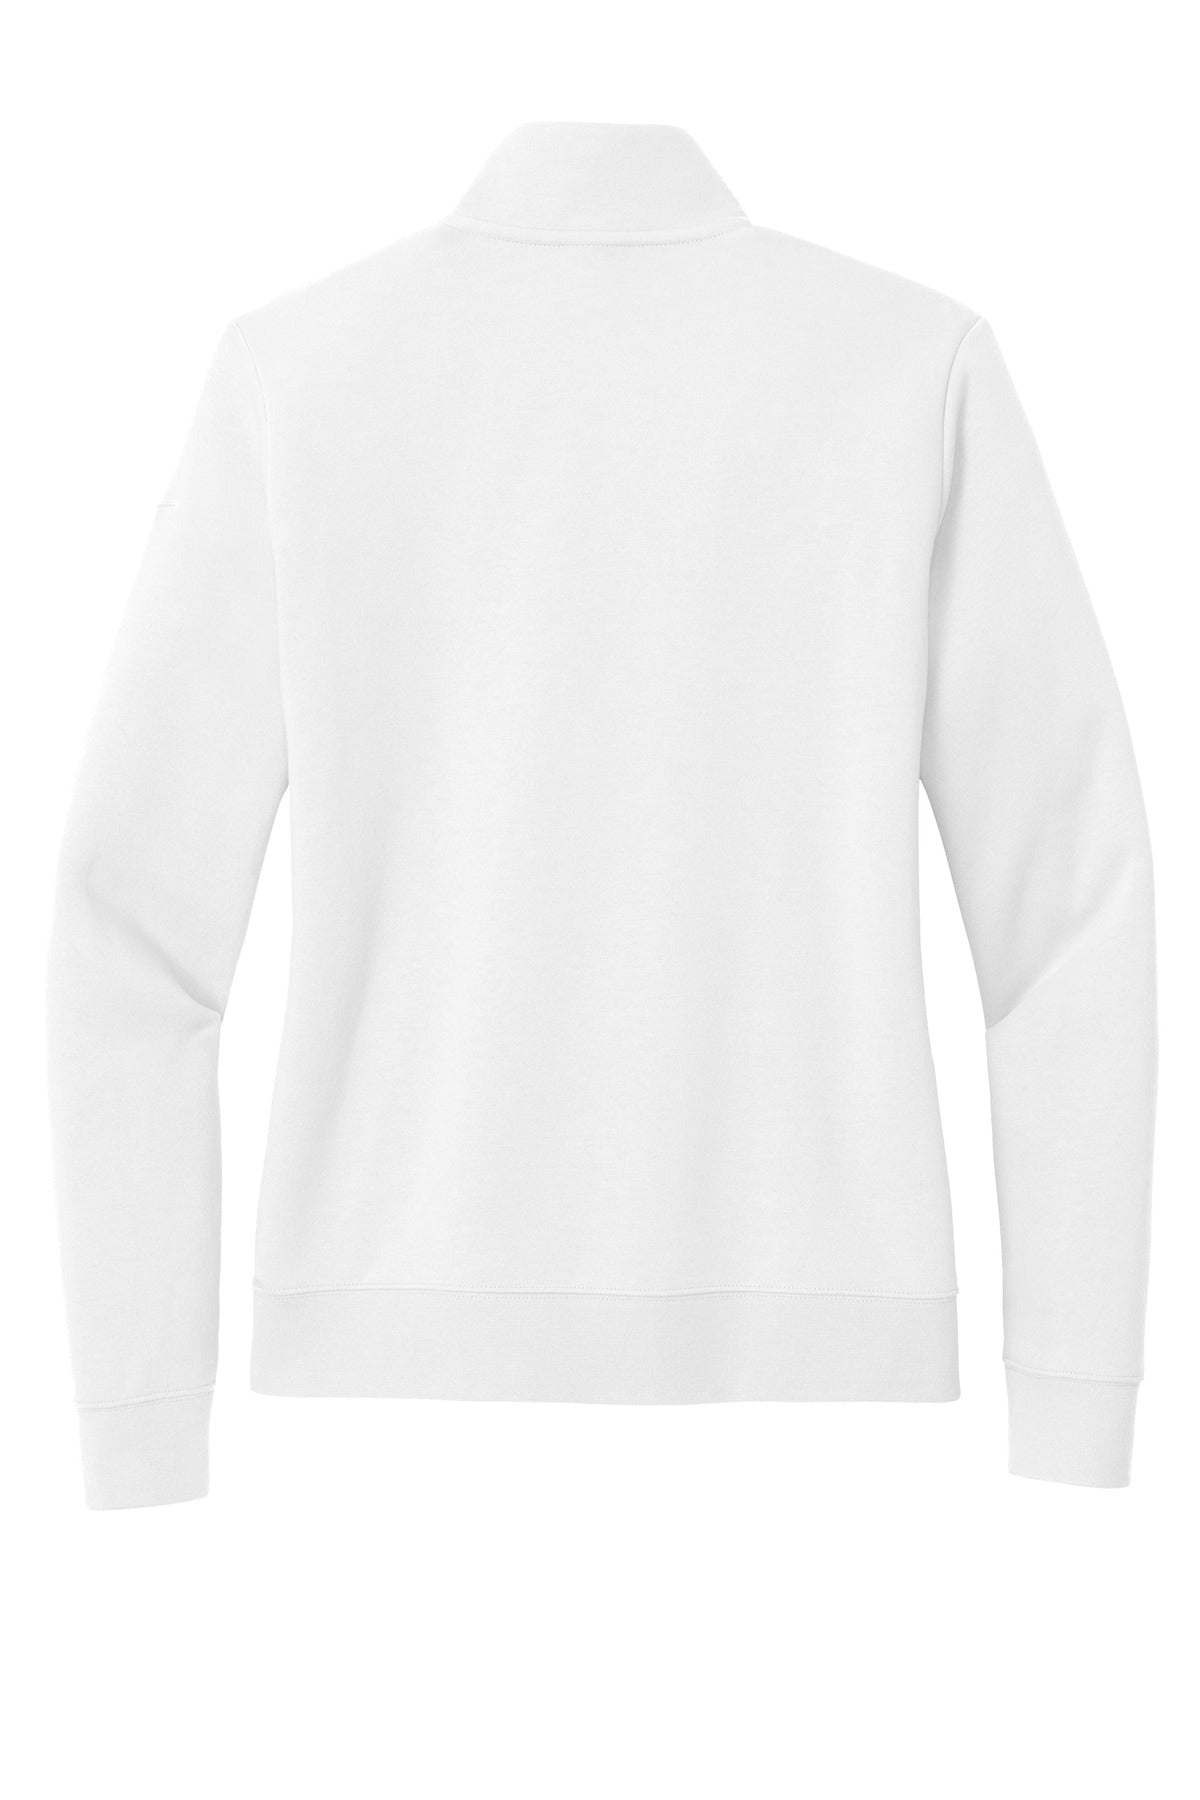 Nike Ladies Club Fleece Sleeve Swoosh 1/2-Zip, Product